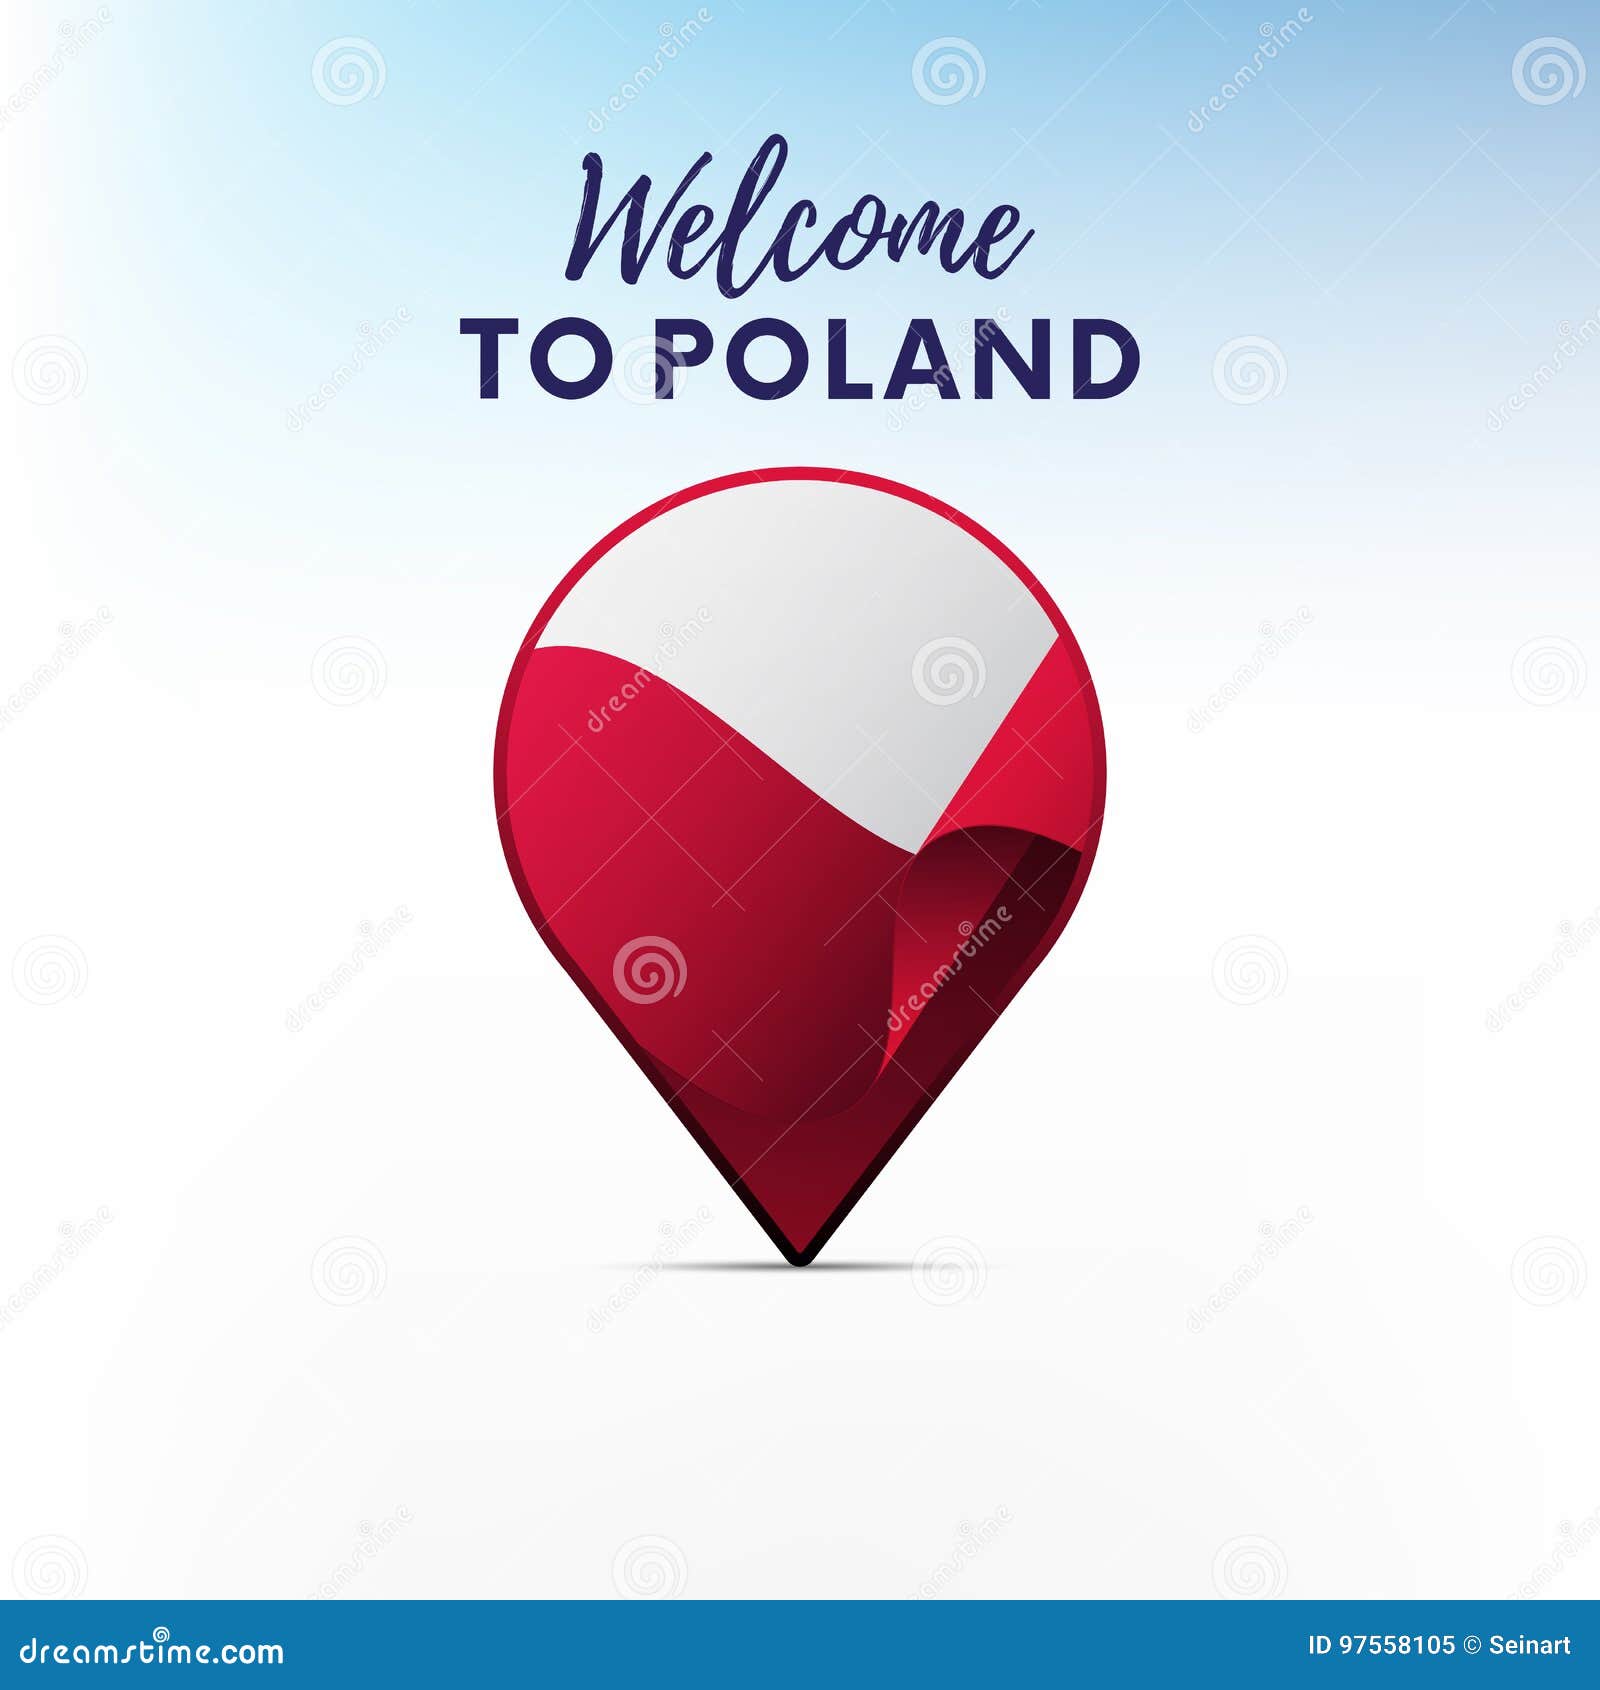 Bienvenue en Pologne